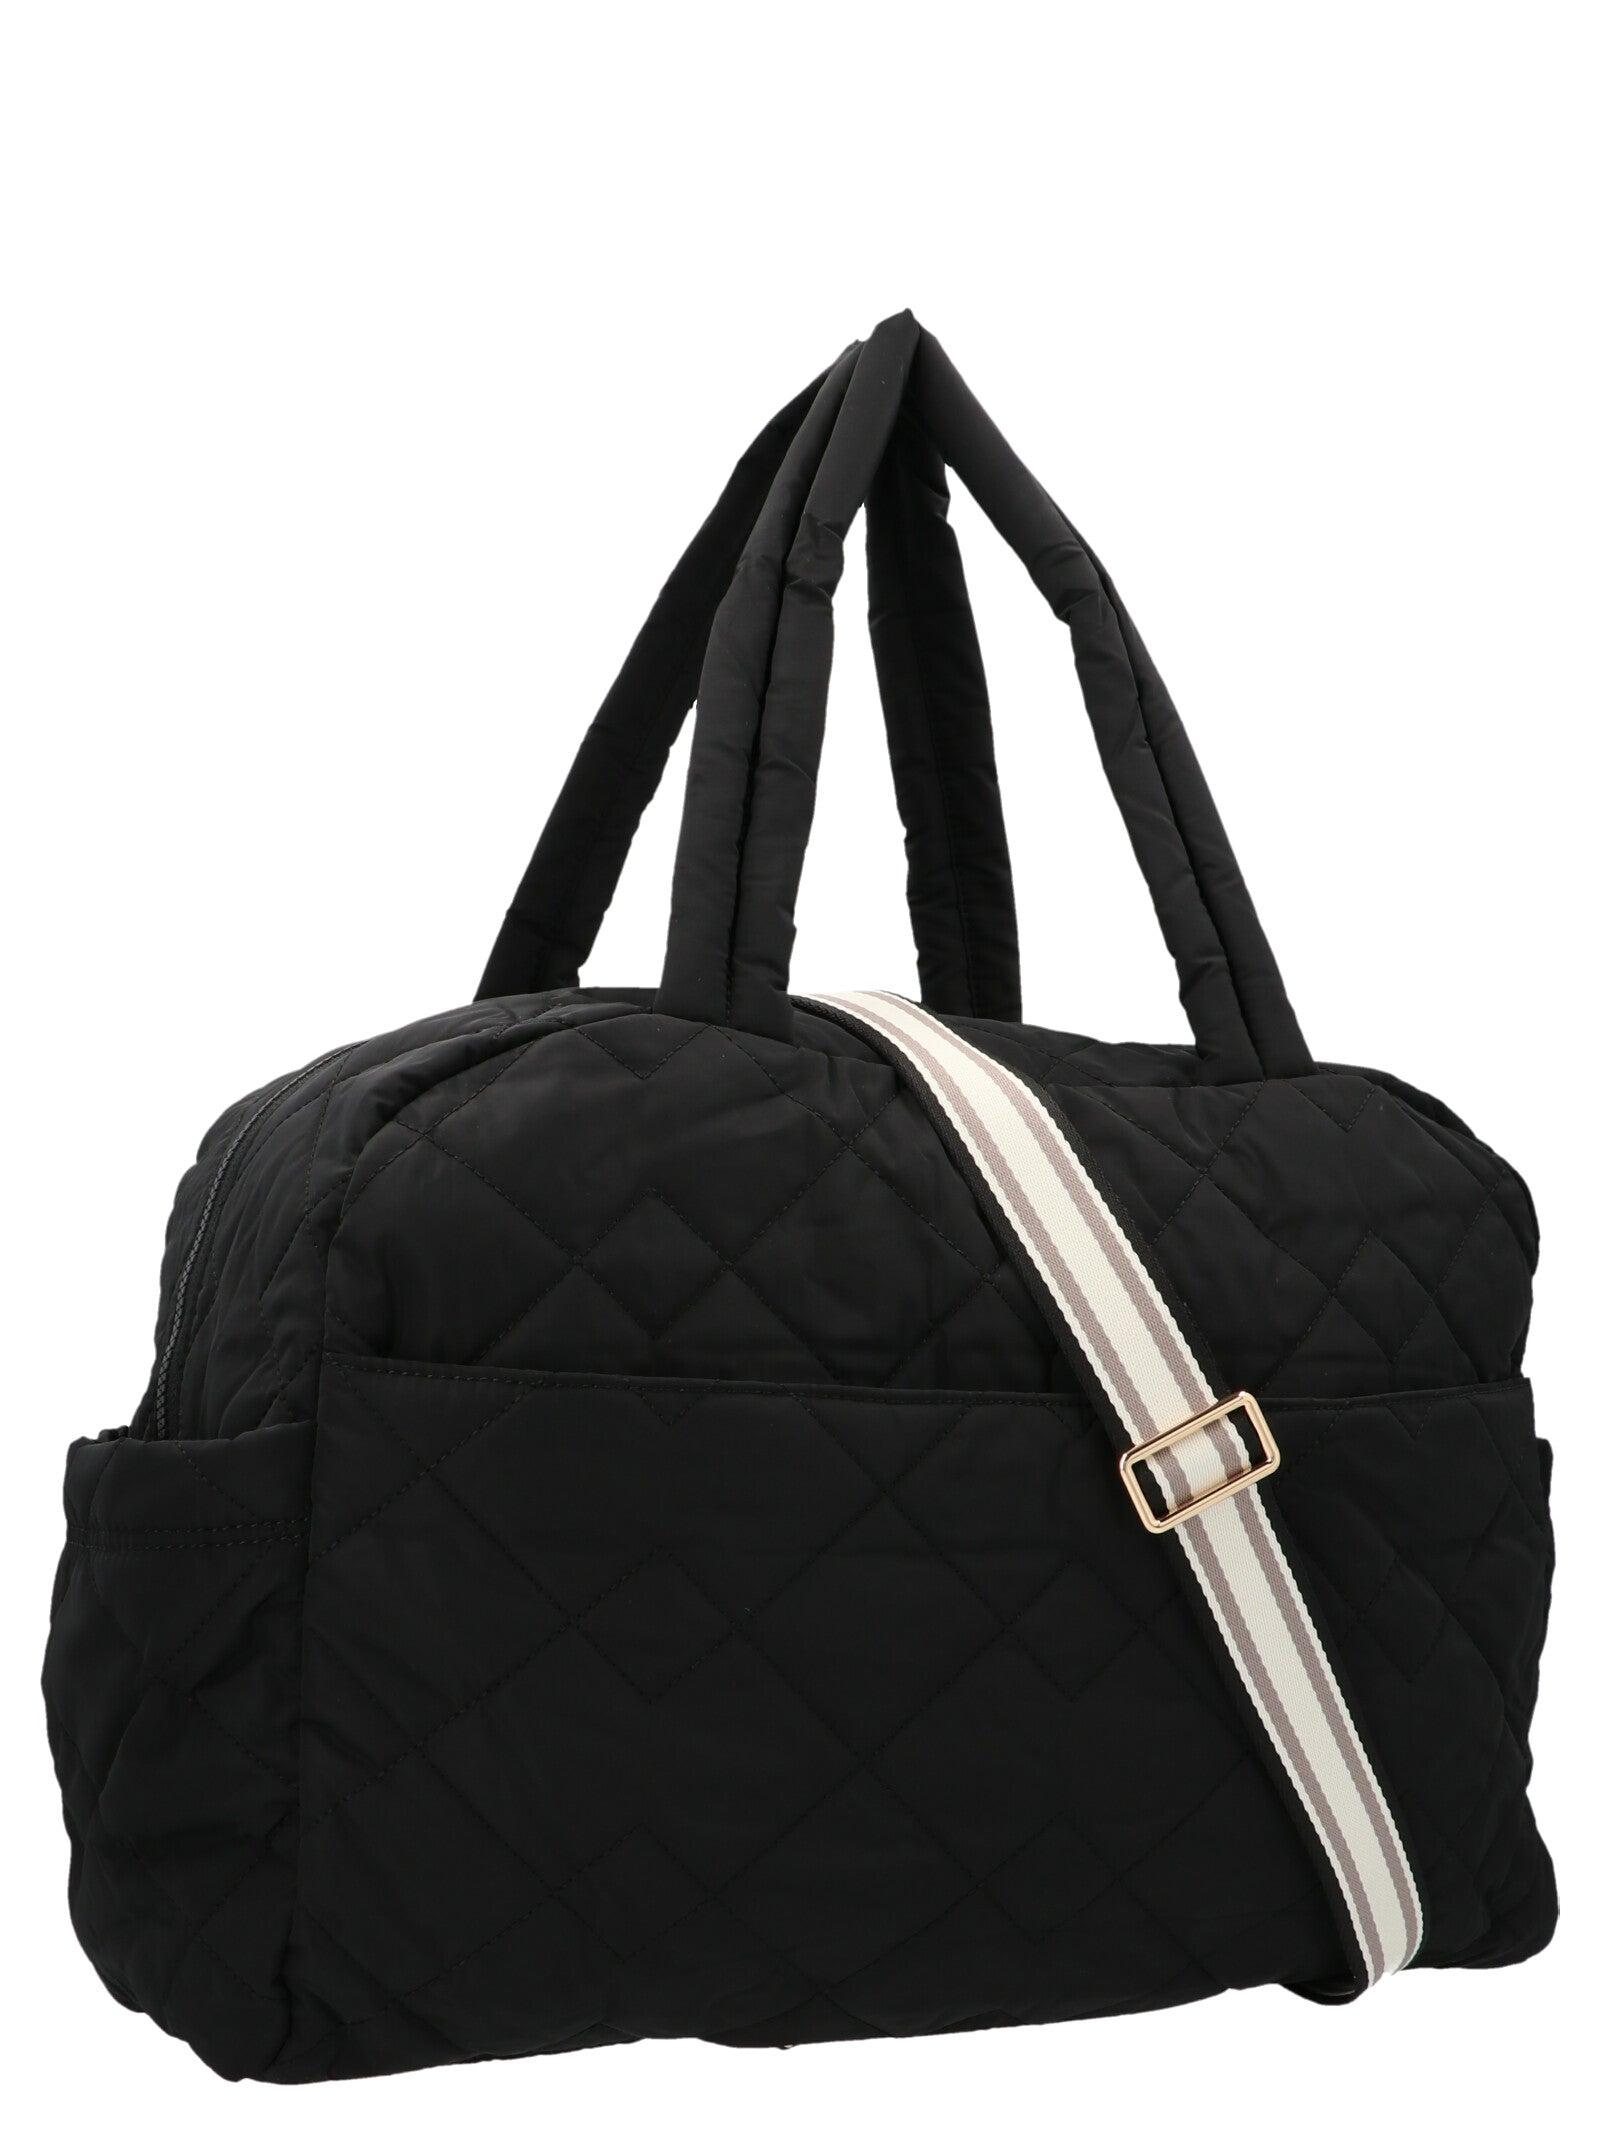 Marc Jacobs Weekender Large Duffle Bag in Black | Lyst